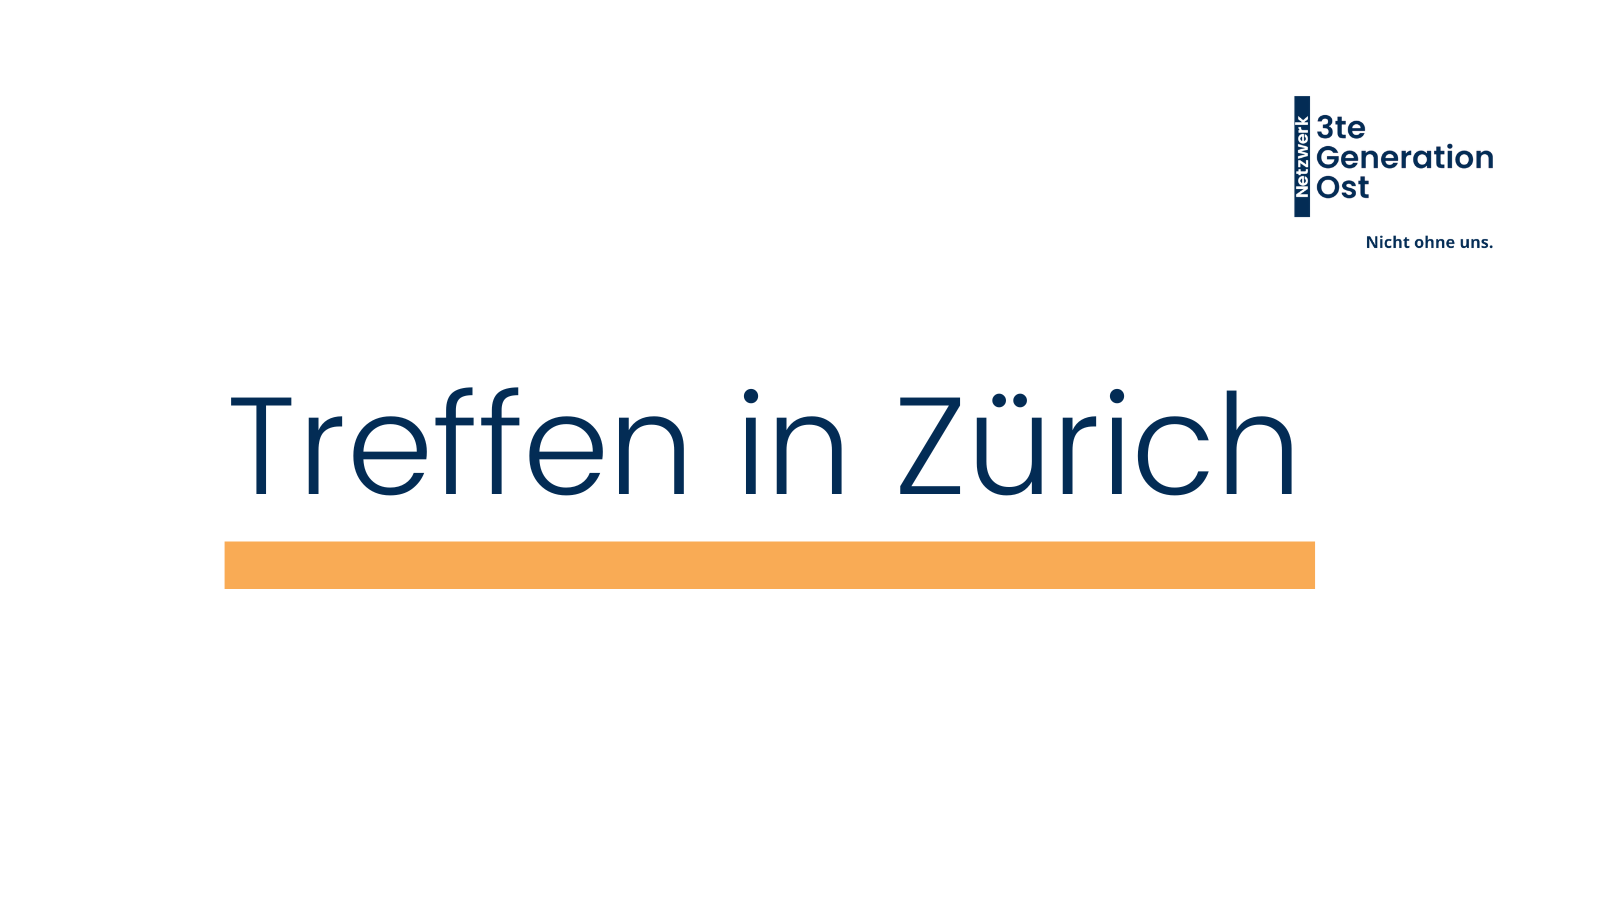 Logo Netzwerk 3te Generation Ost oben rechts. Mittig platziert in dunkelblau - Treffen in Zürich- mit orangenem Unterstrich